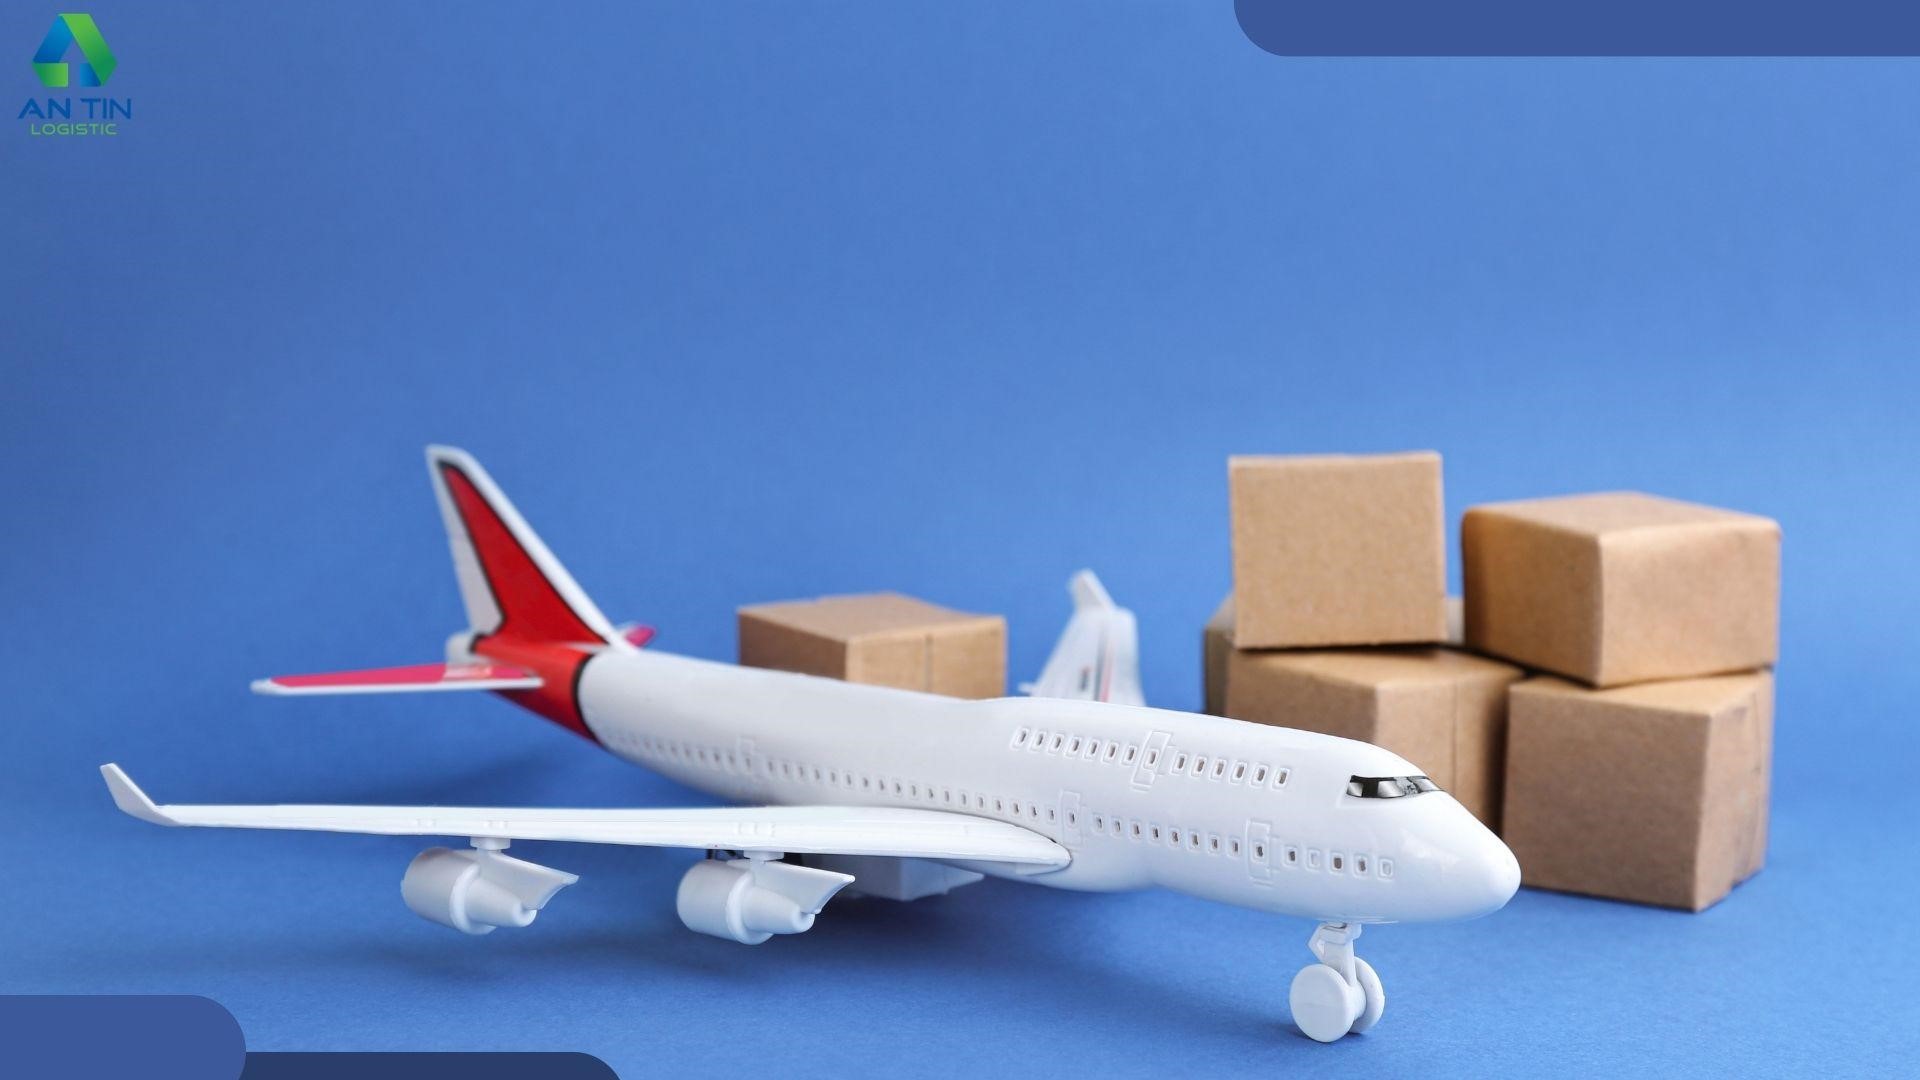 Dịch vụ vận chuyển hàng không nội địa giá rẻ, chất lượng tại An Tín Logistics